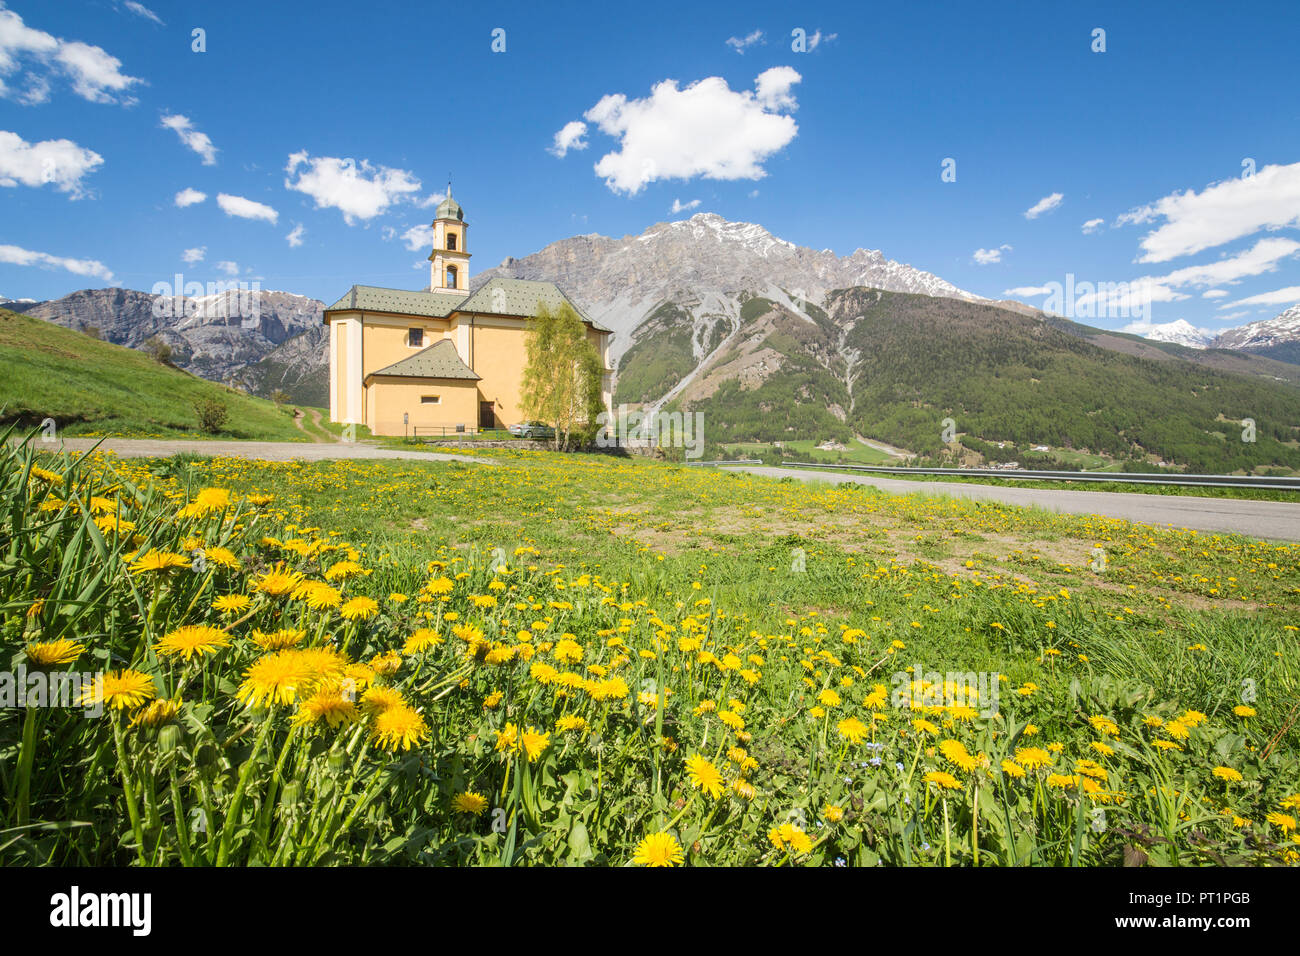 Gelbe Blumen und grüne Wiesen Rahmen die Kirche von Oga Bormio Stilfser Joch Nationalpark obere Veltlin Lombardei Italien Stockfoto